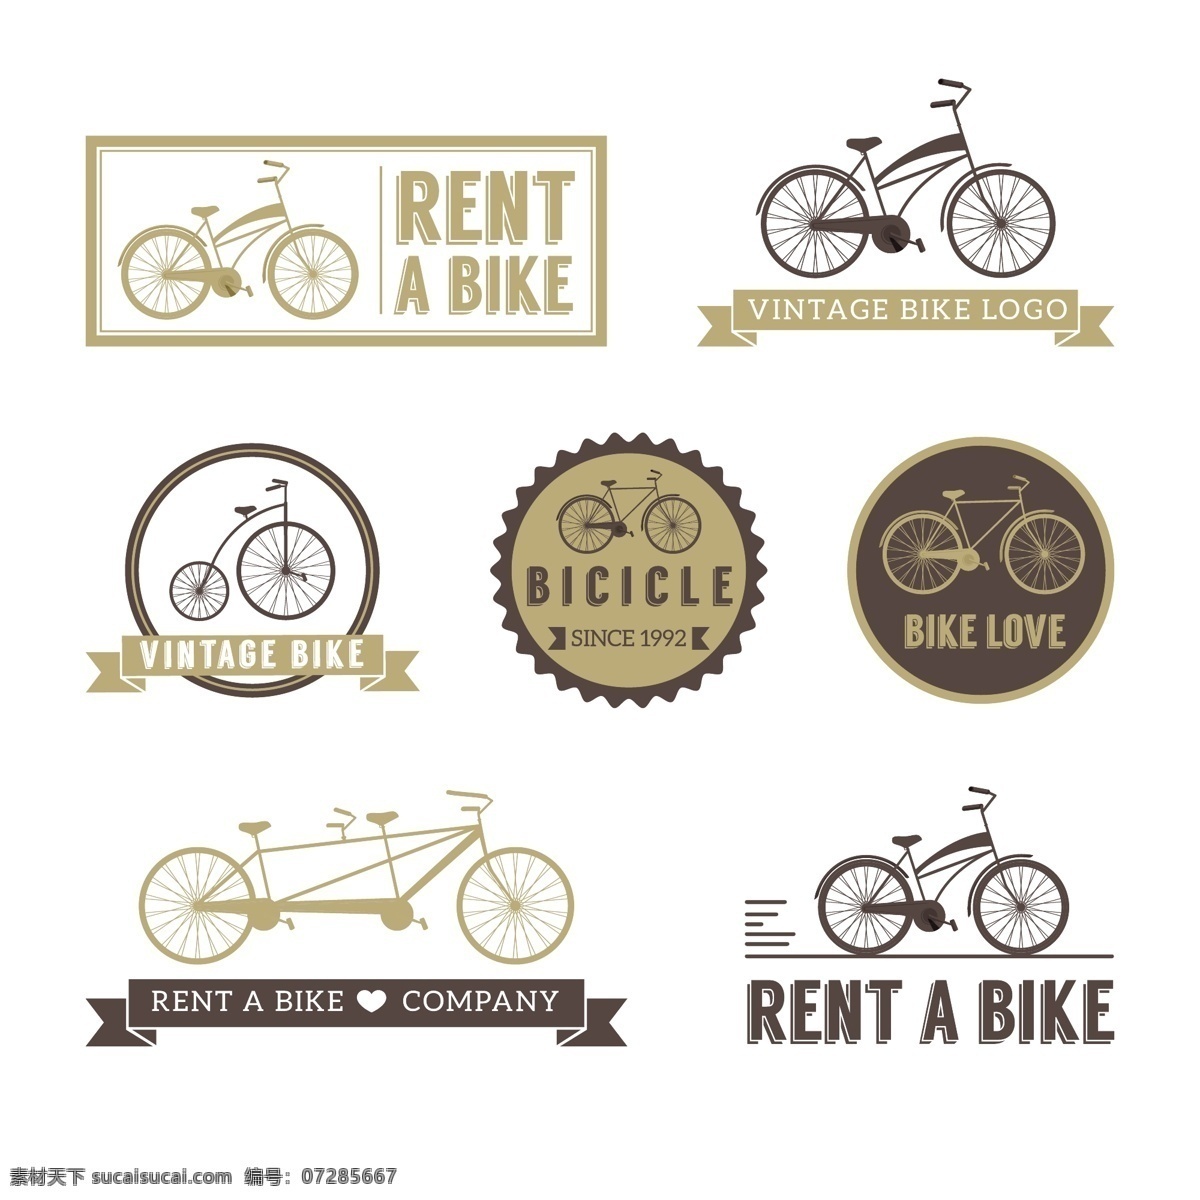 自行车图标 小图标 小标志 图标 logo 标志 vi icon 标识 图标设计 logo设计 标志设计 自行车 单车 交通工具 车辆 山地车 赛车 bike 手绘自行车 卡通自行车 手绘 自行车素材 骑行队 自行车俱乐部 图标图表